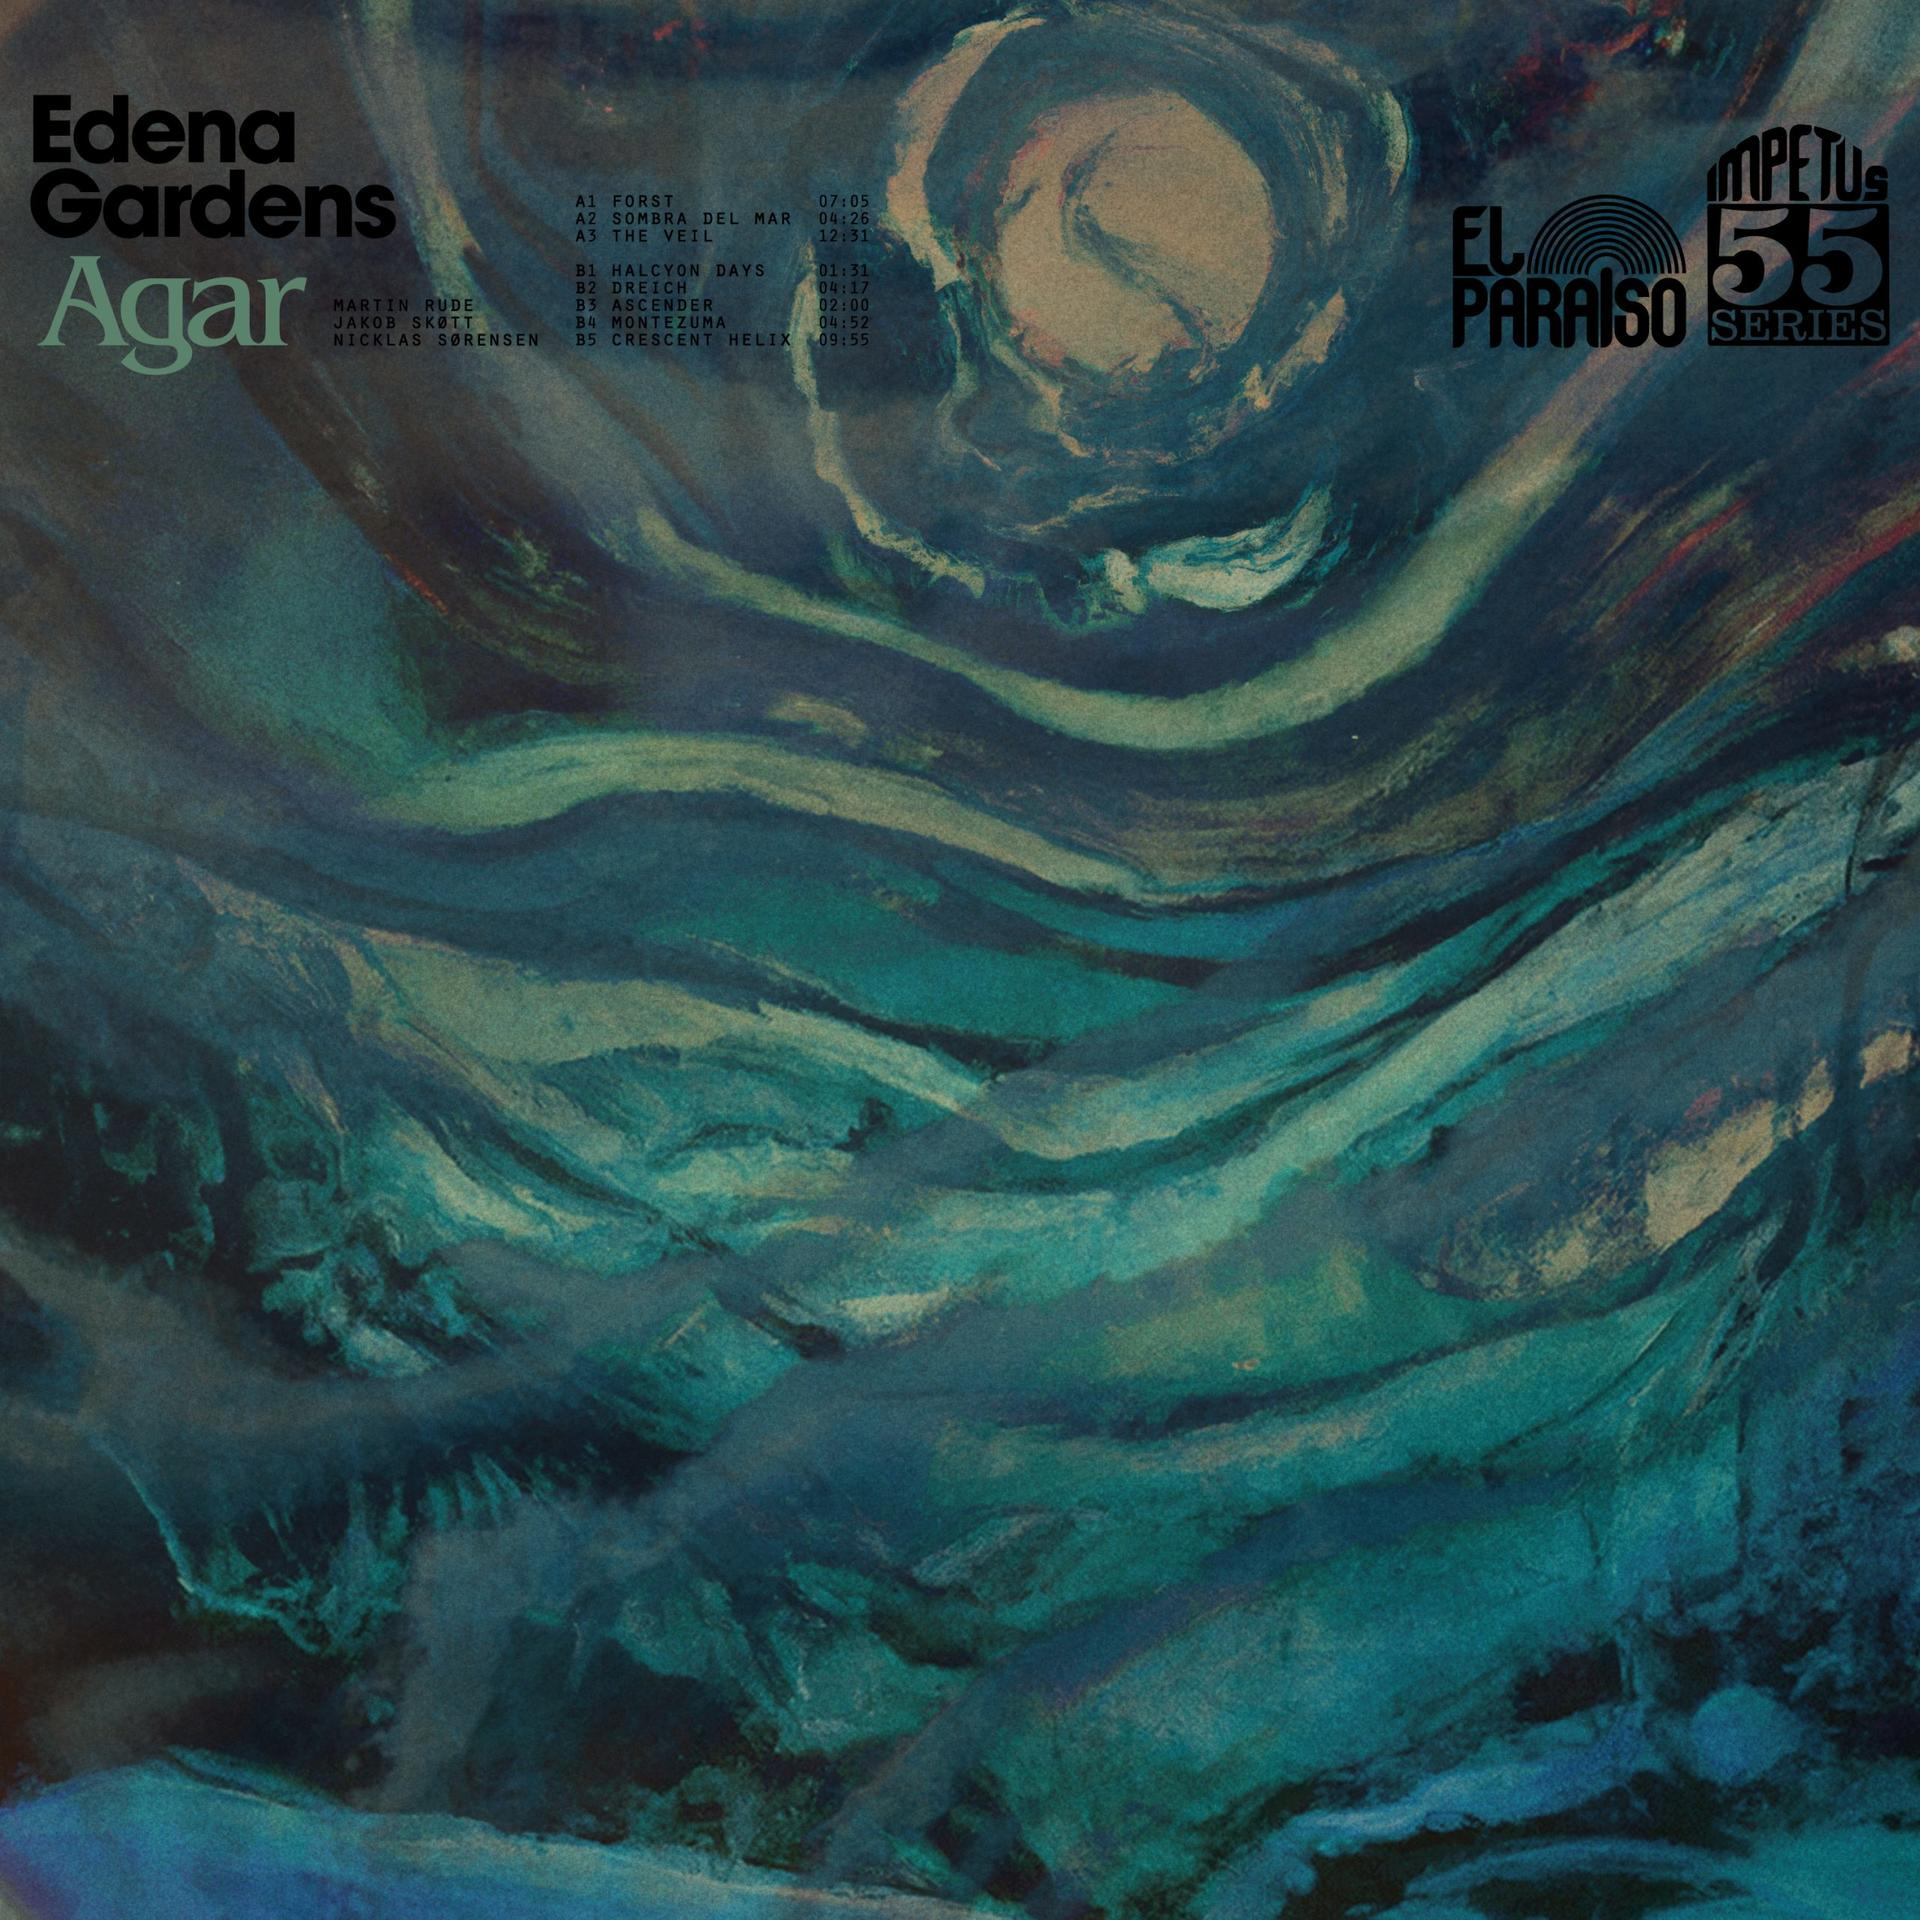 Edena Gardens (CD) - - Agar